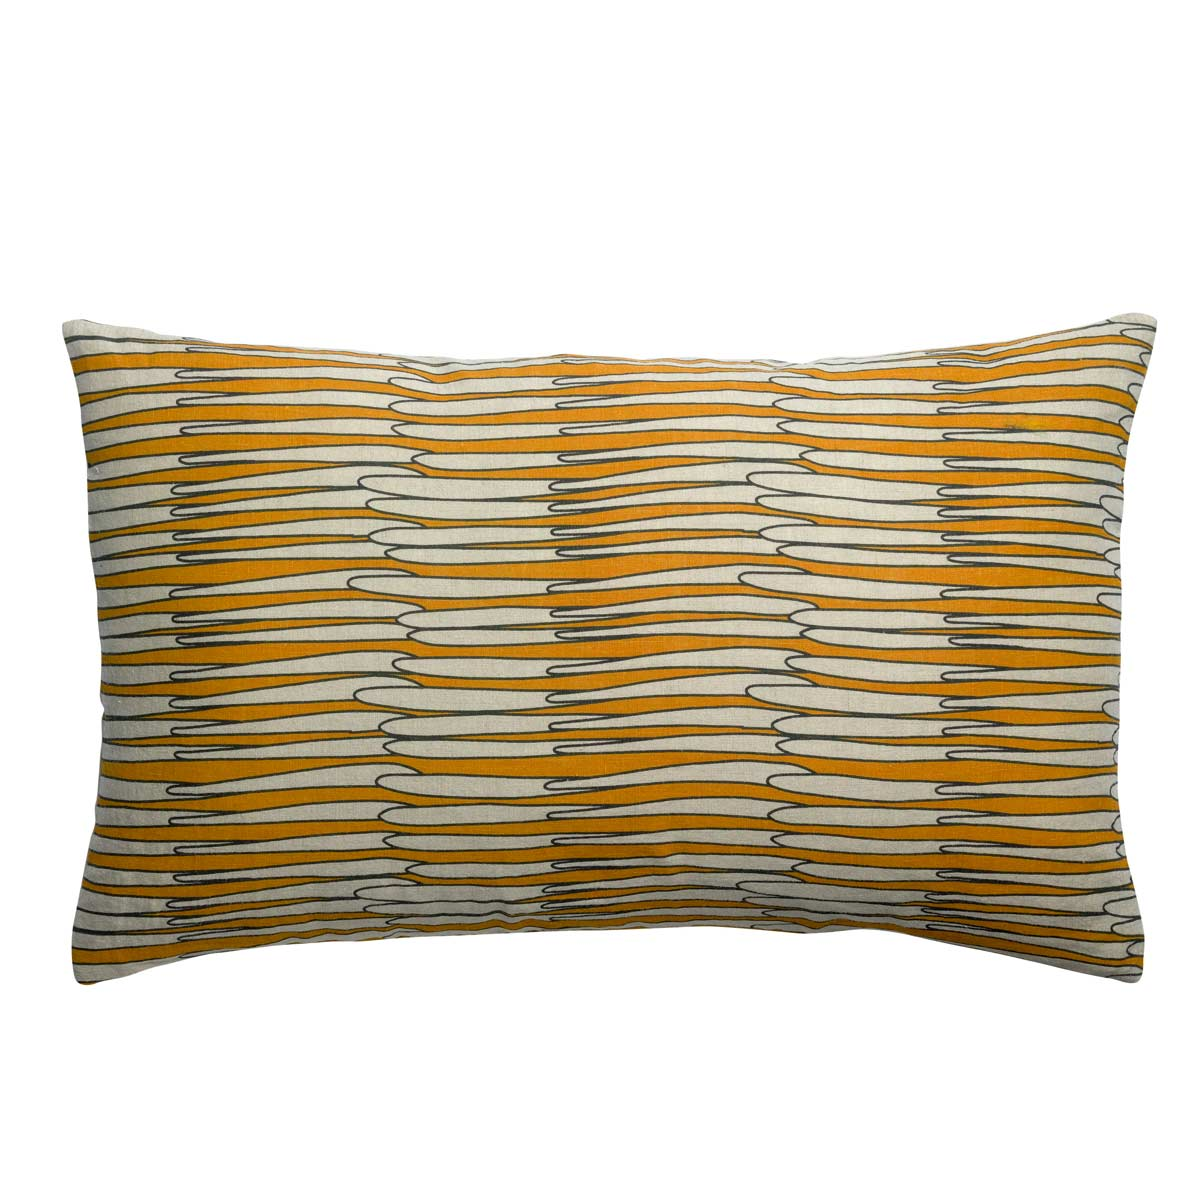 Cuscino rettangolare giallo ocra in puro lino, Vivaraise - LivingDecò